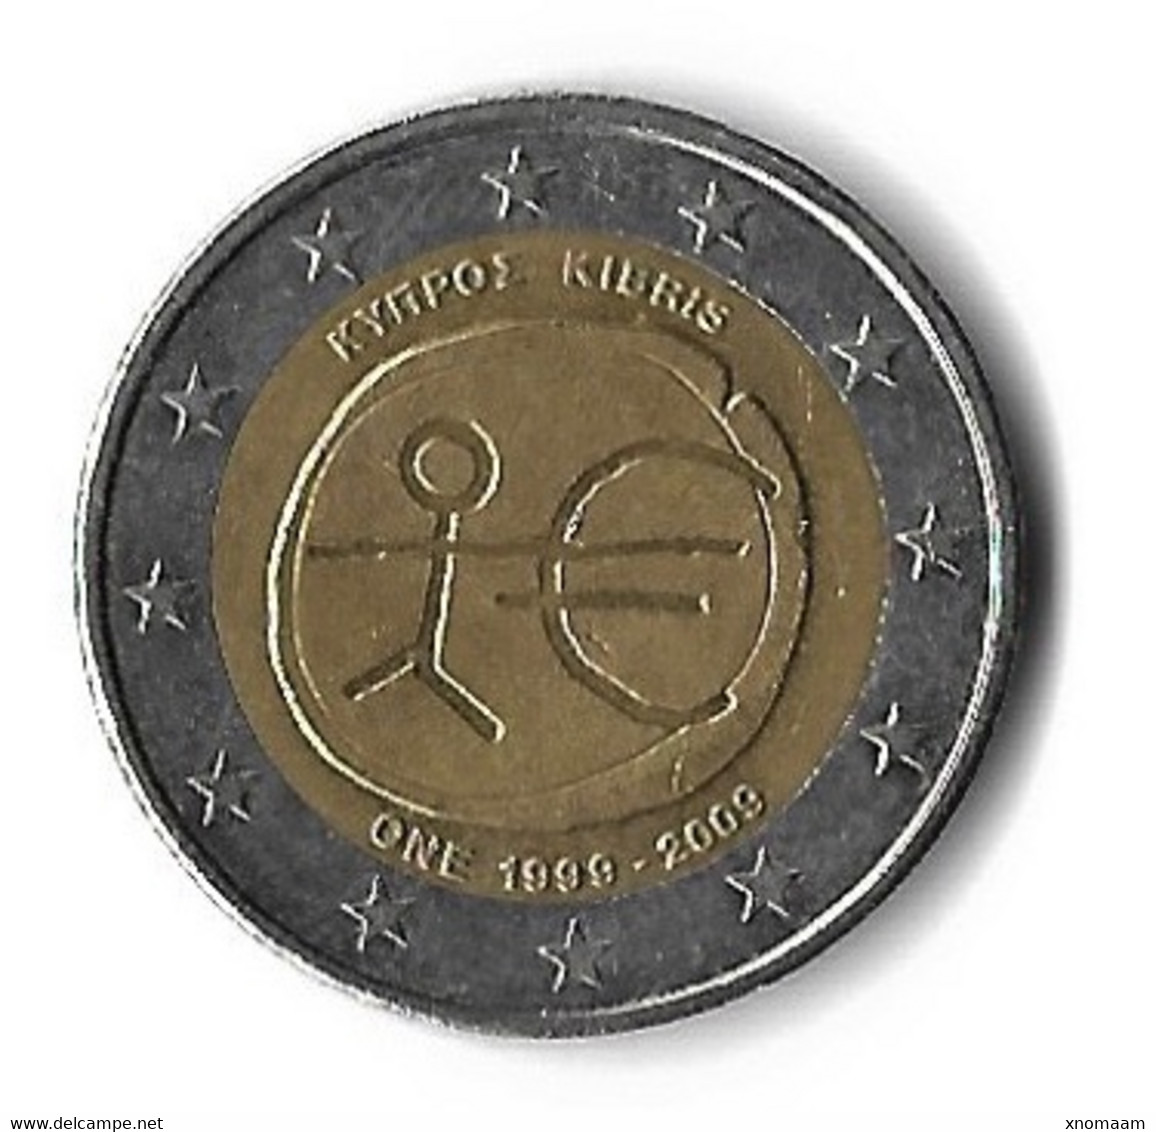 Chypre 2009 - 2 Euro Commémorative - 10 Ans De L'euro - Zypern